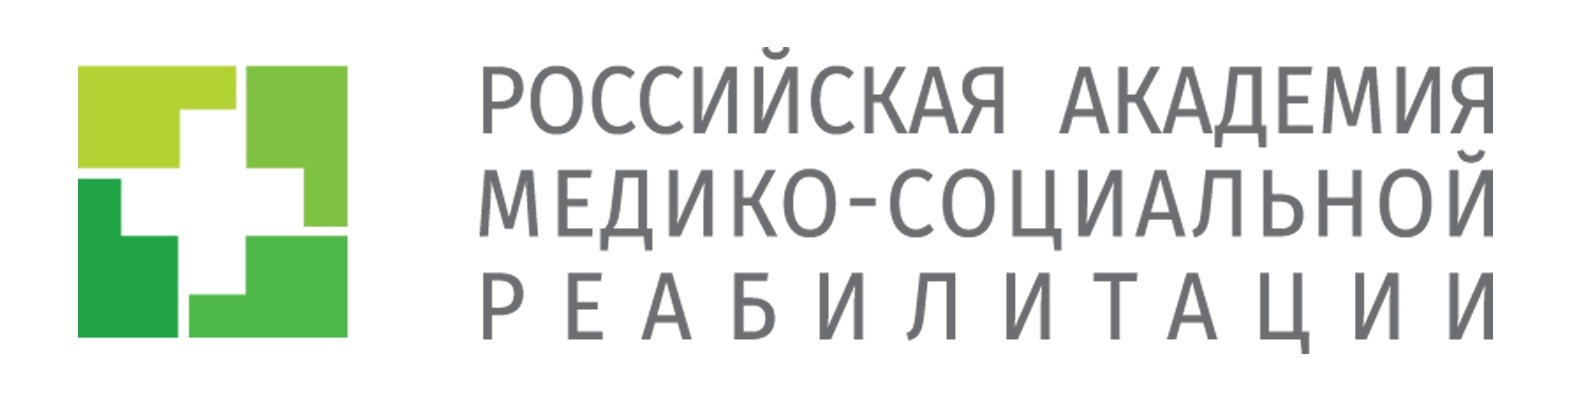 Логотип (Российская академия медико-социальной реабилитации)